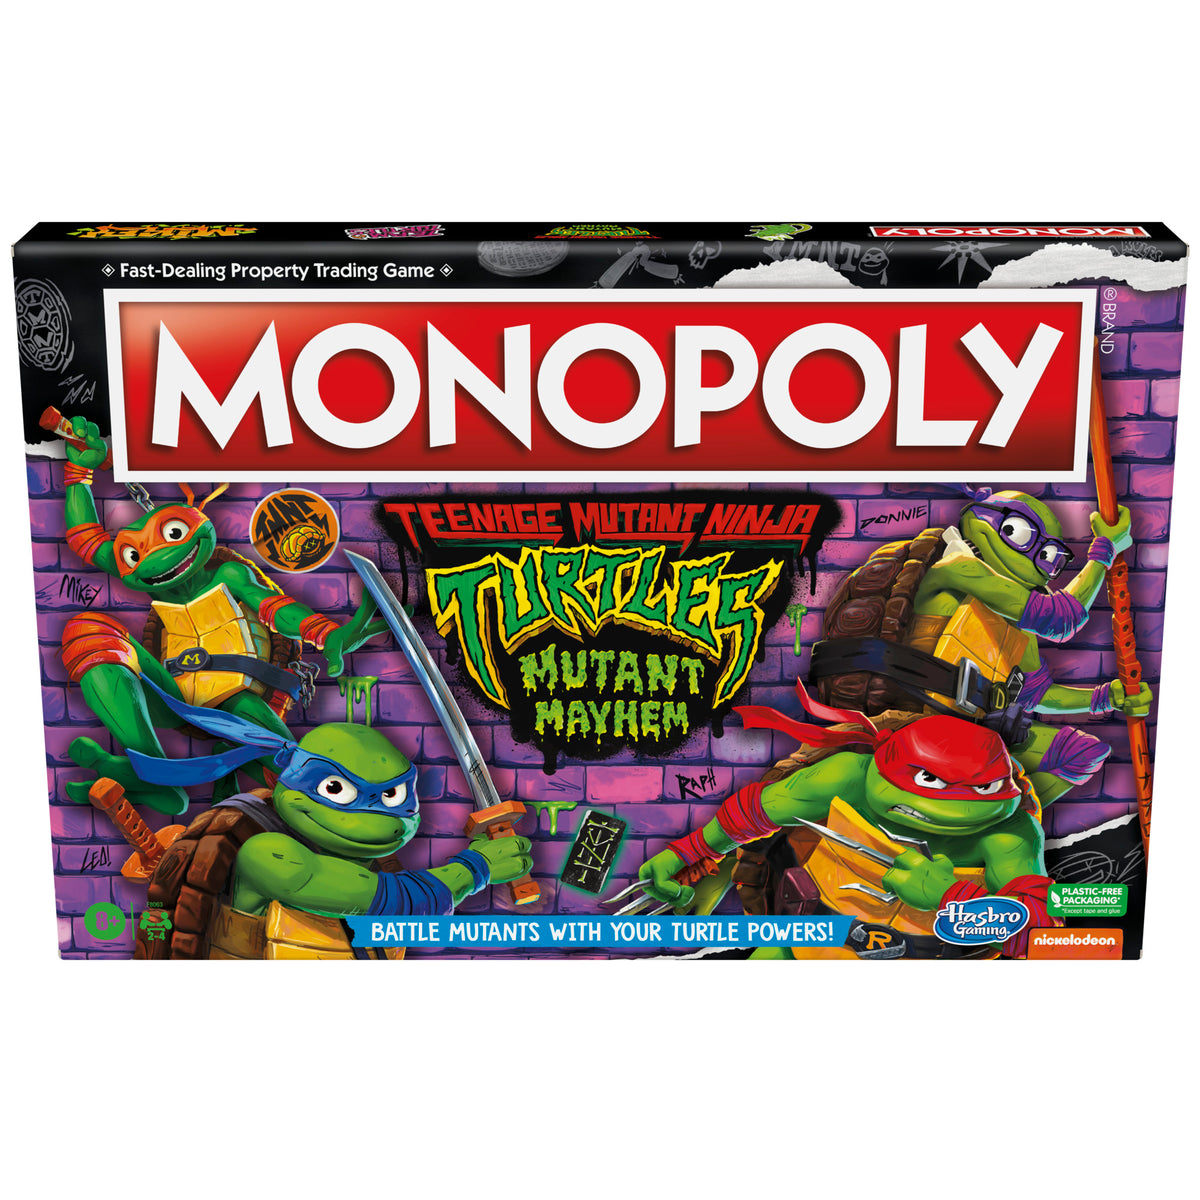 Turtles In Disguise Party Pack - Teenage Mutant Ninja Turtles Mutant Mayhem  action figure